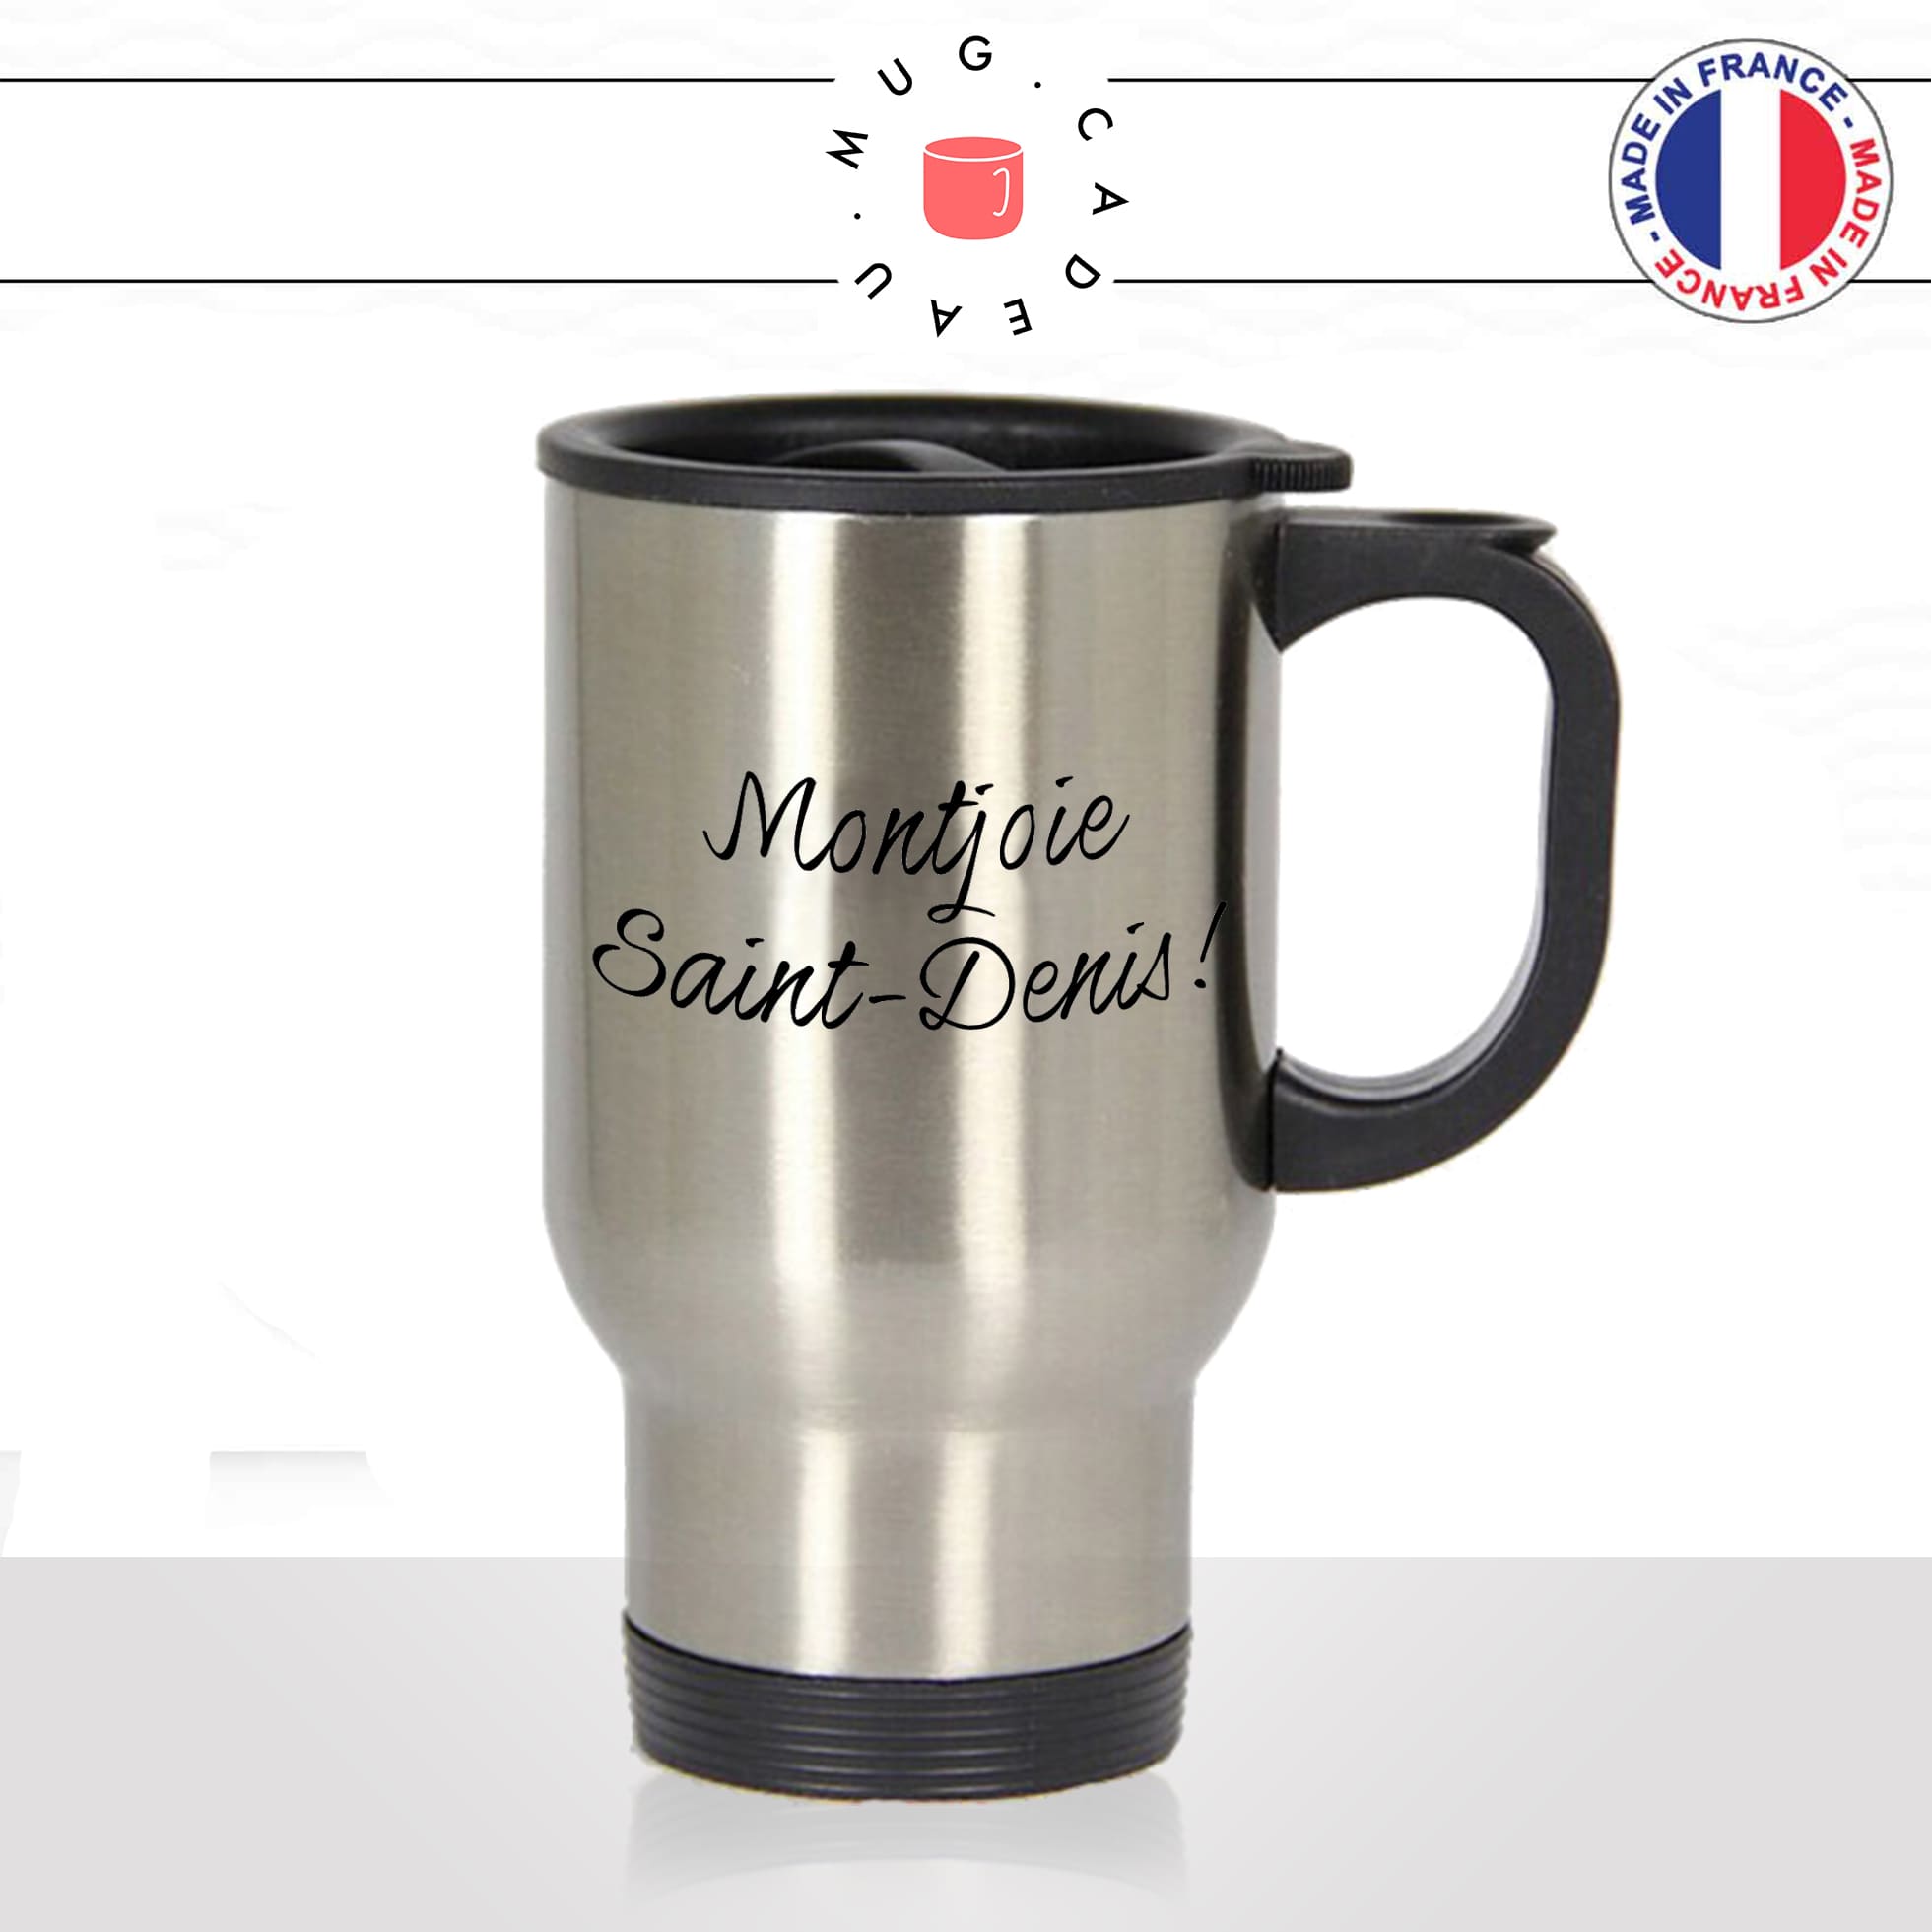 mug-tasse-thermos-isotherme-unique-montjoie-saint-denis-les-visiteurs-gifle-homme-femme-film-francais-humour-fun-cool-idée-cadeau-original2